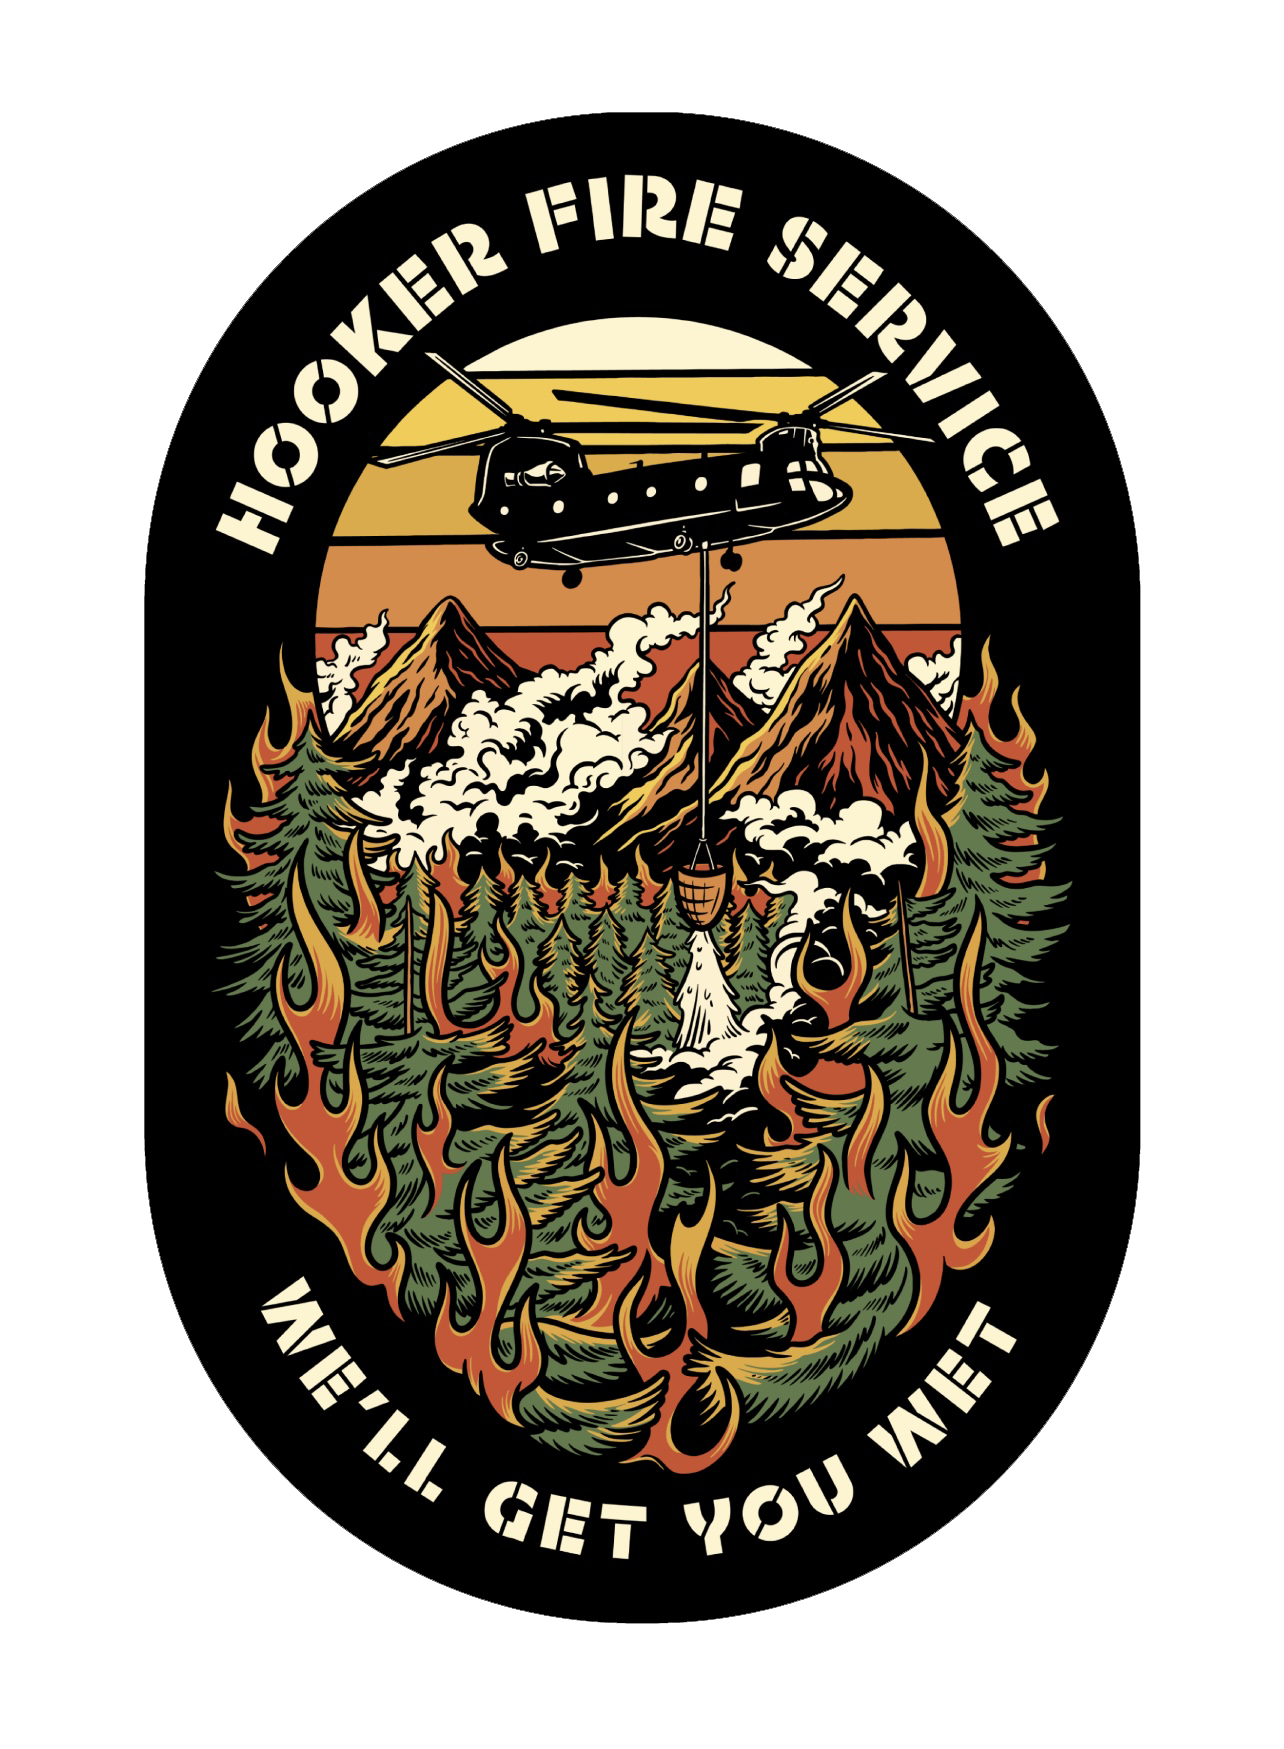 Hooker Fire Service Sticker